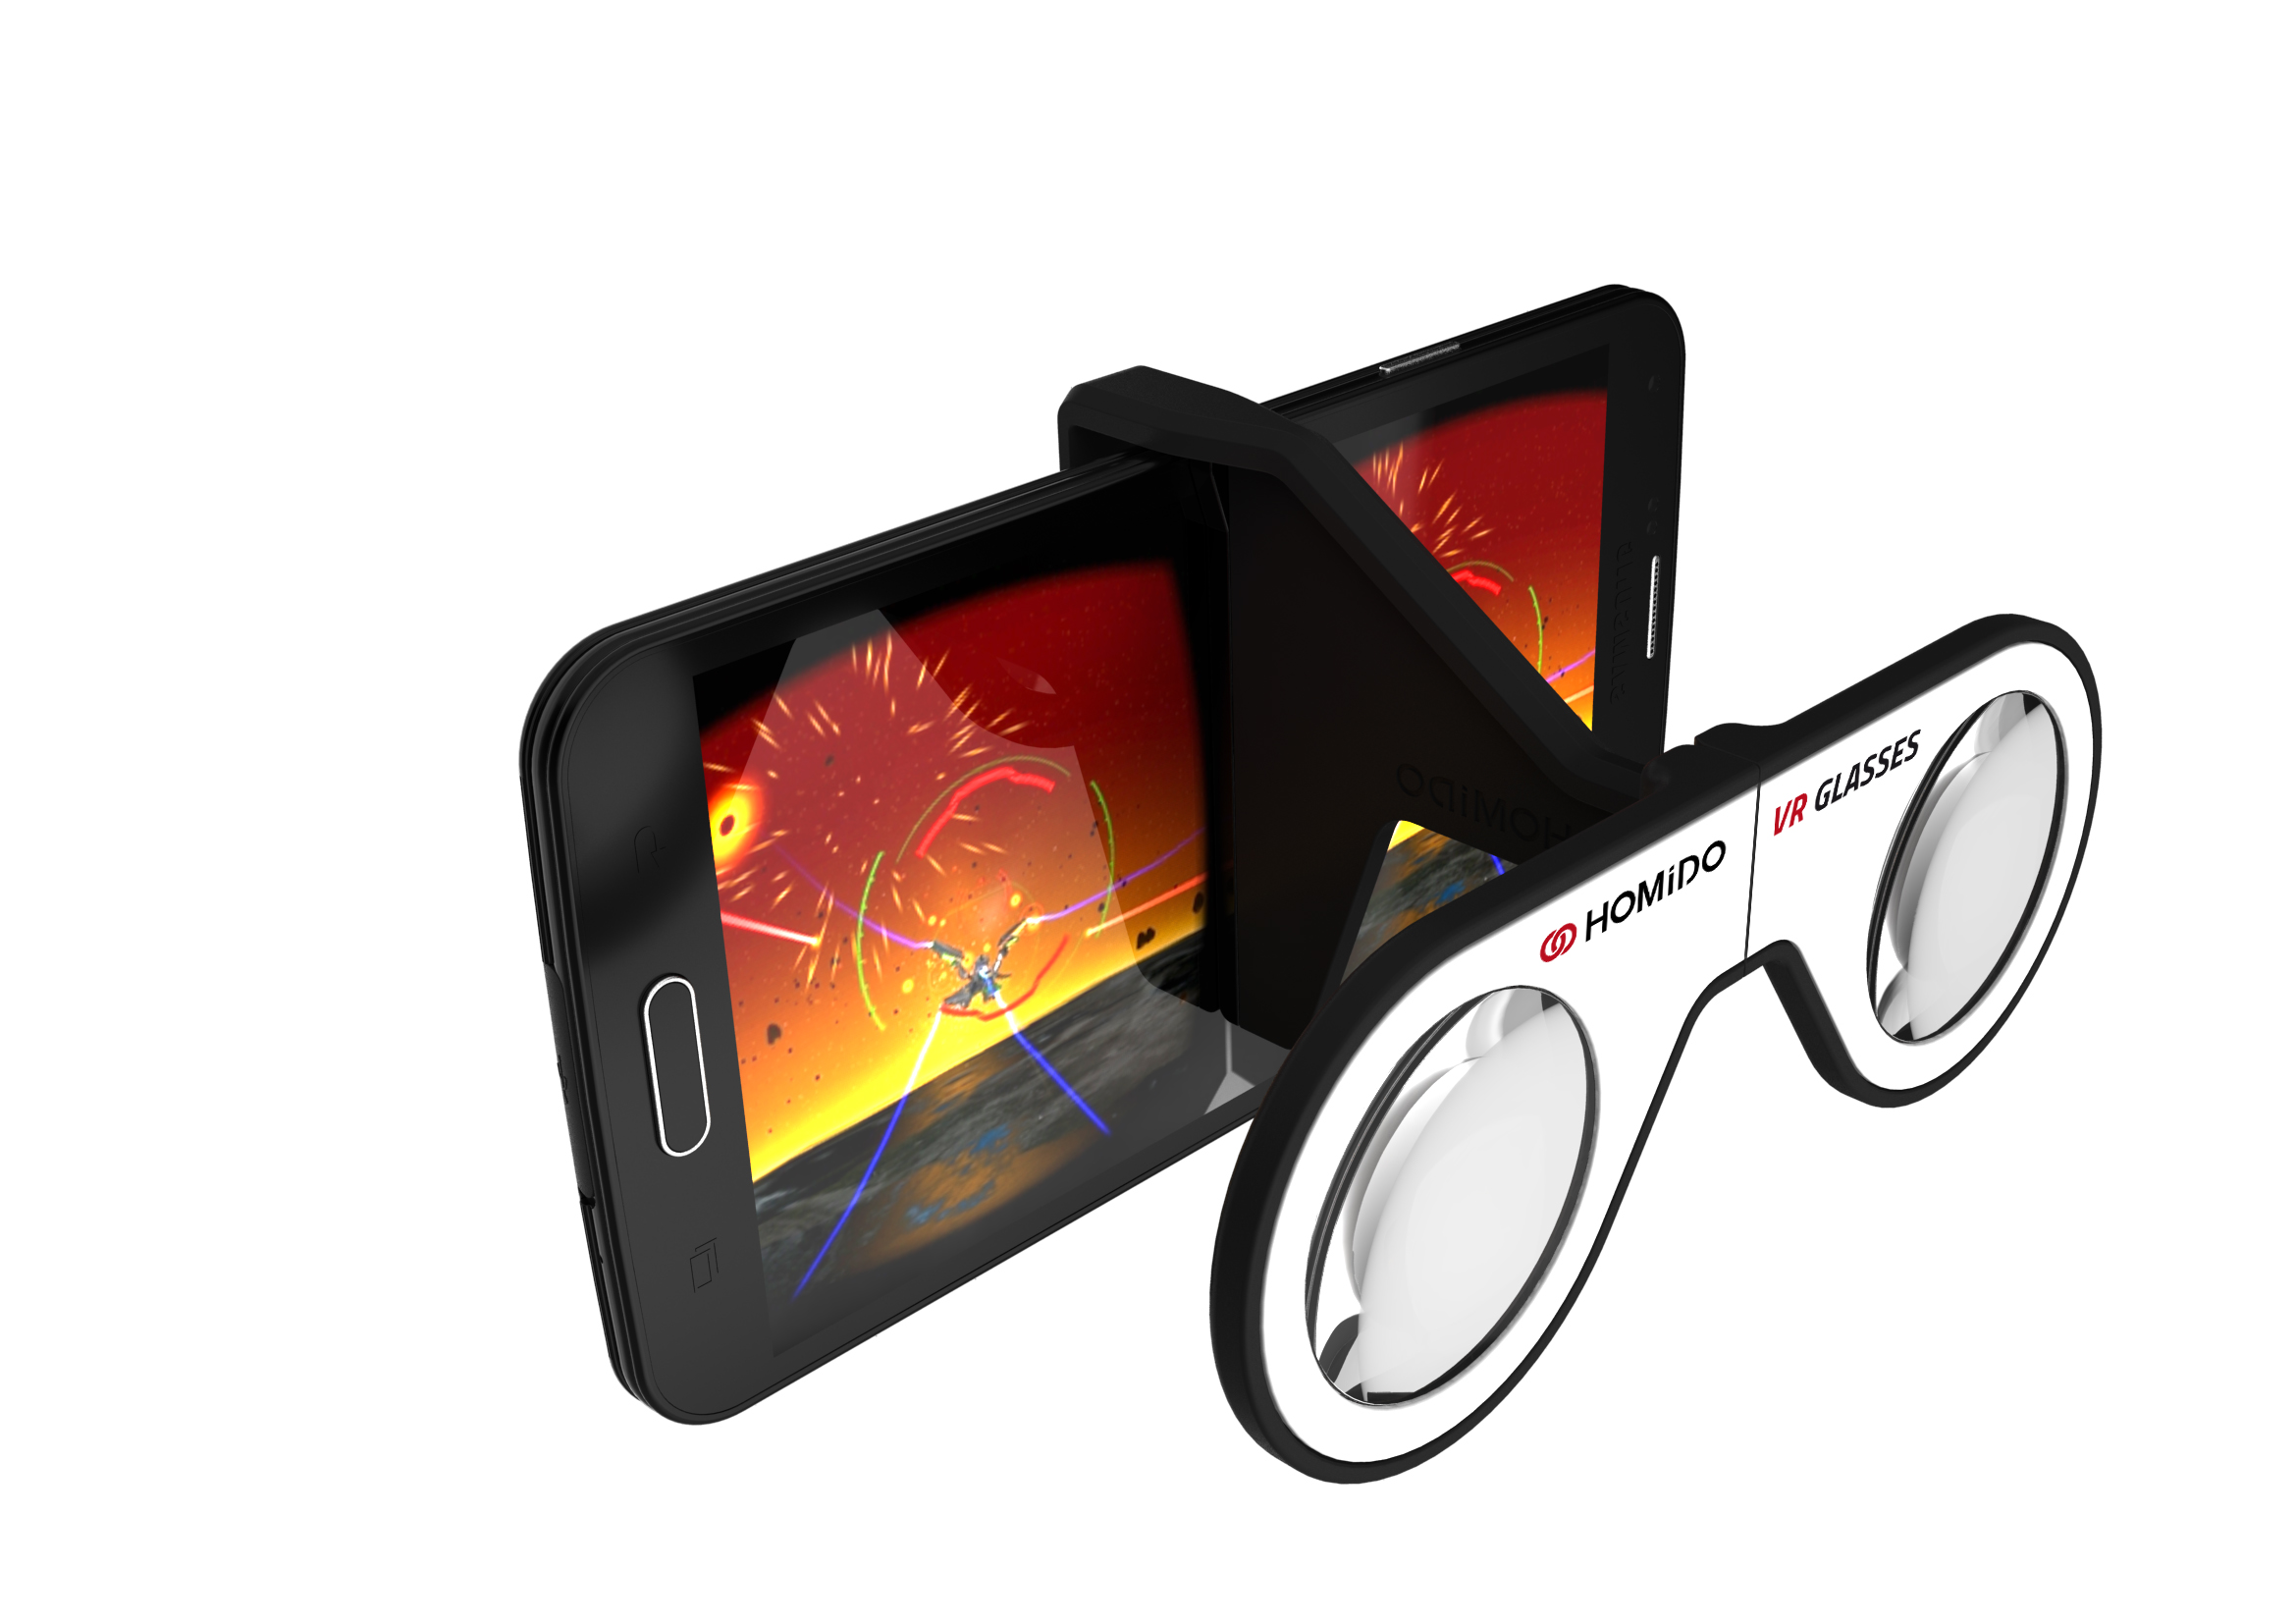 Homido Medpi réalité virtuelle smartphone